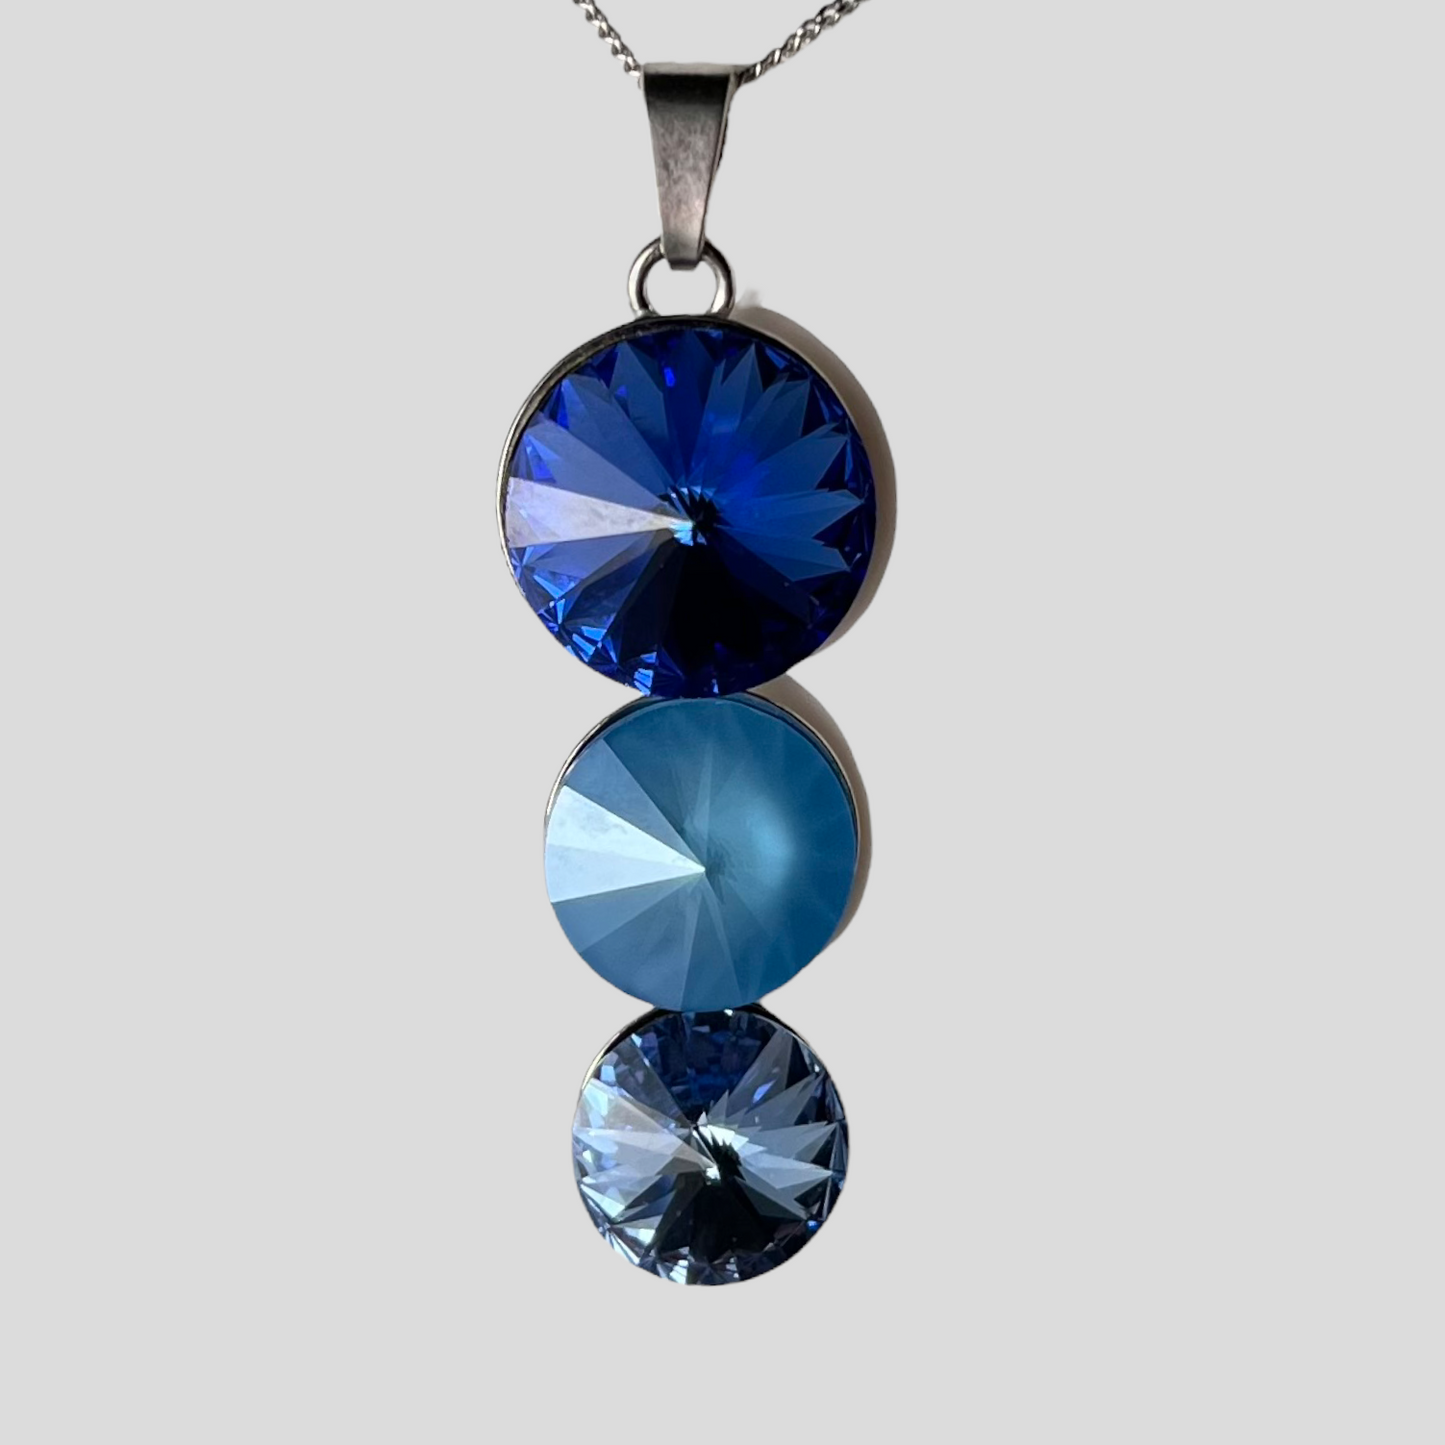 Pendentif avec cristaux Swarovski, bleu, argent rhodié, TRIO